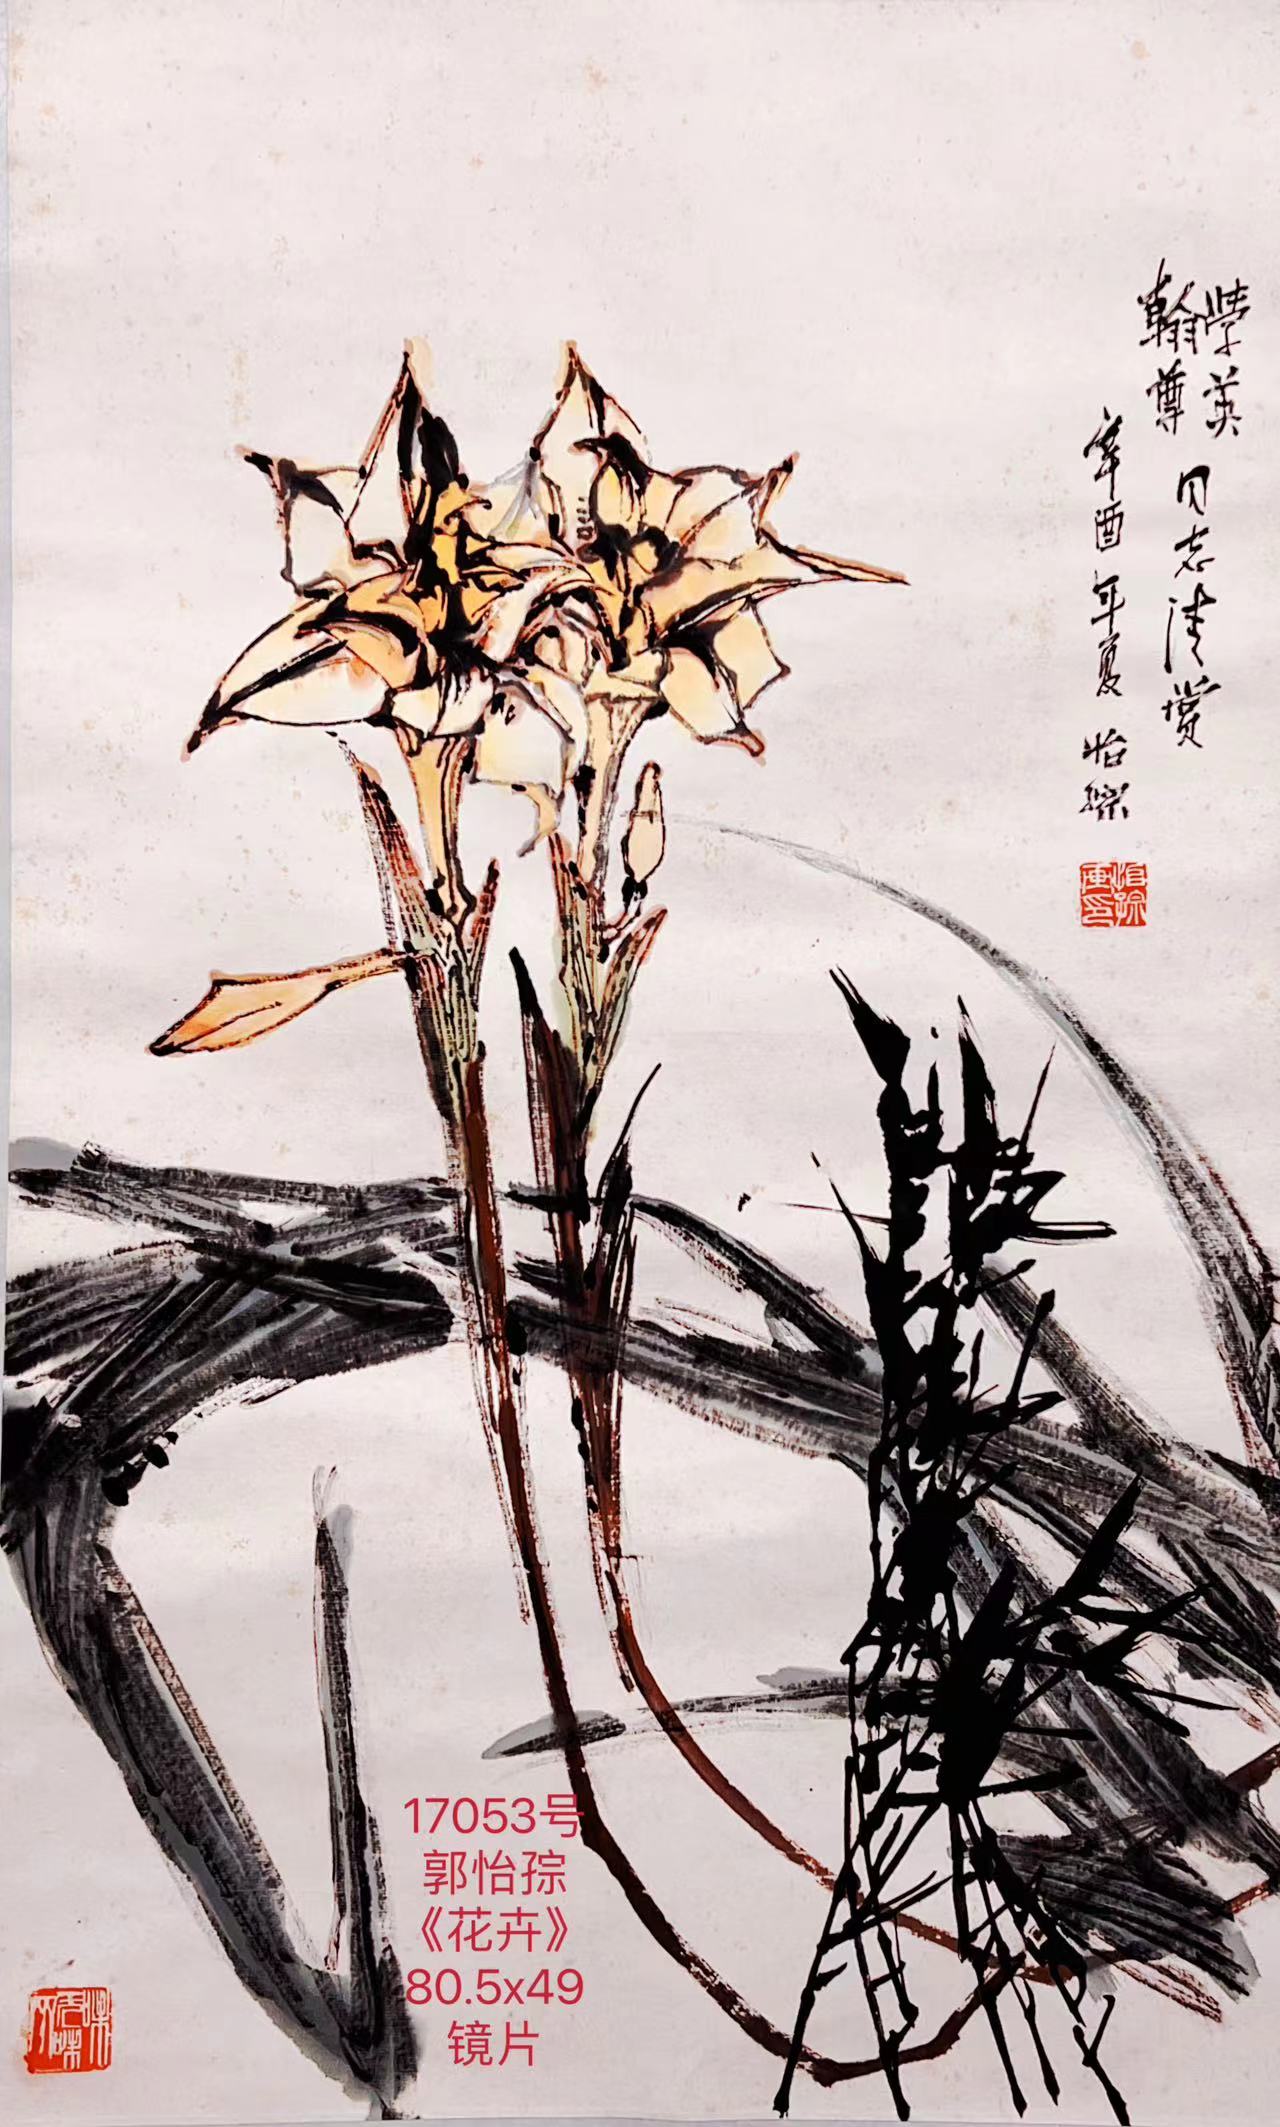 17053号郭怡孮《花卉》80.5x49镜片王翰尊夫妇上款.jpg